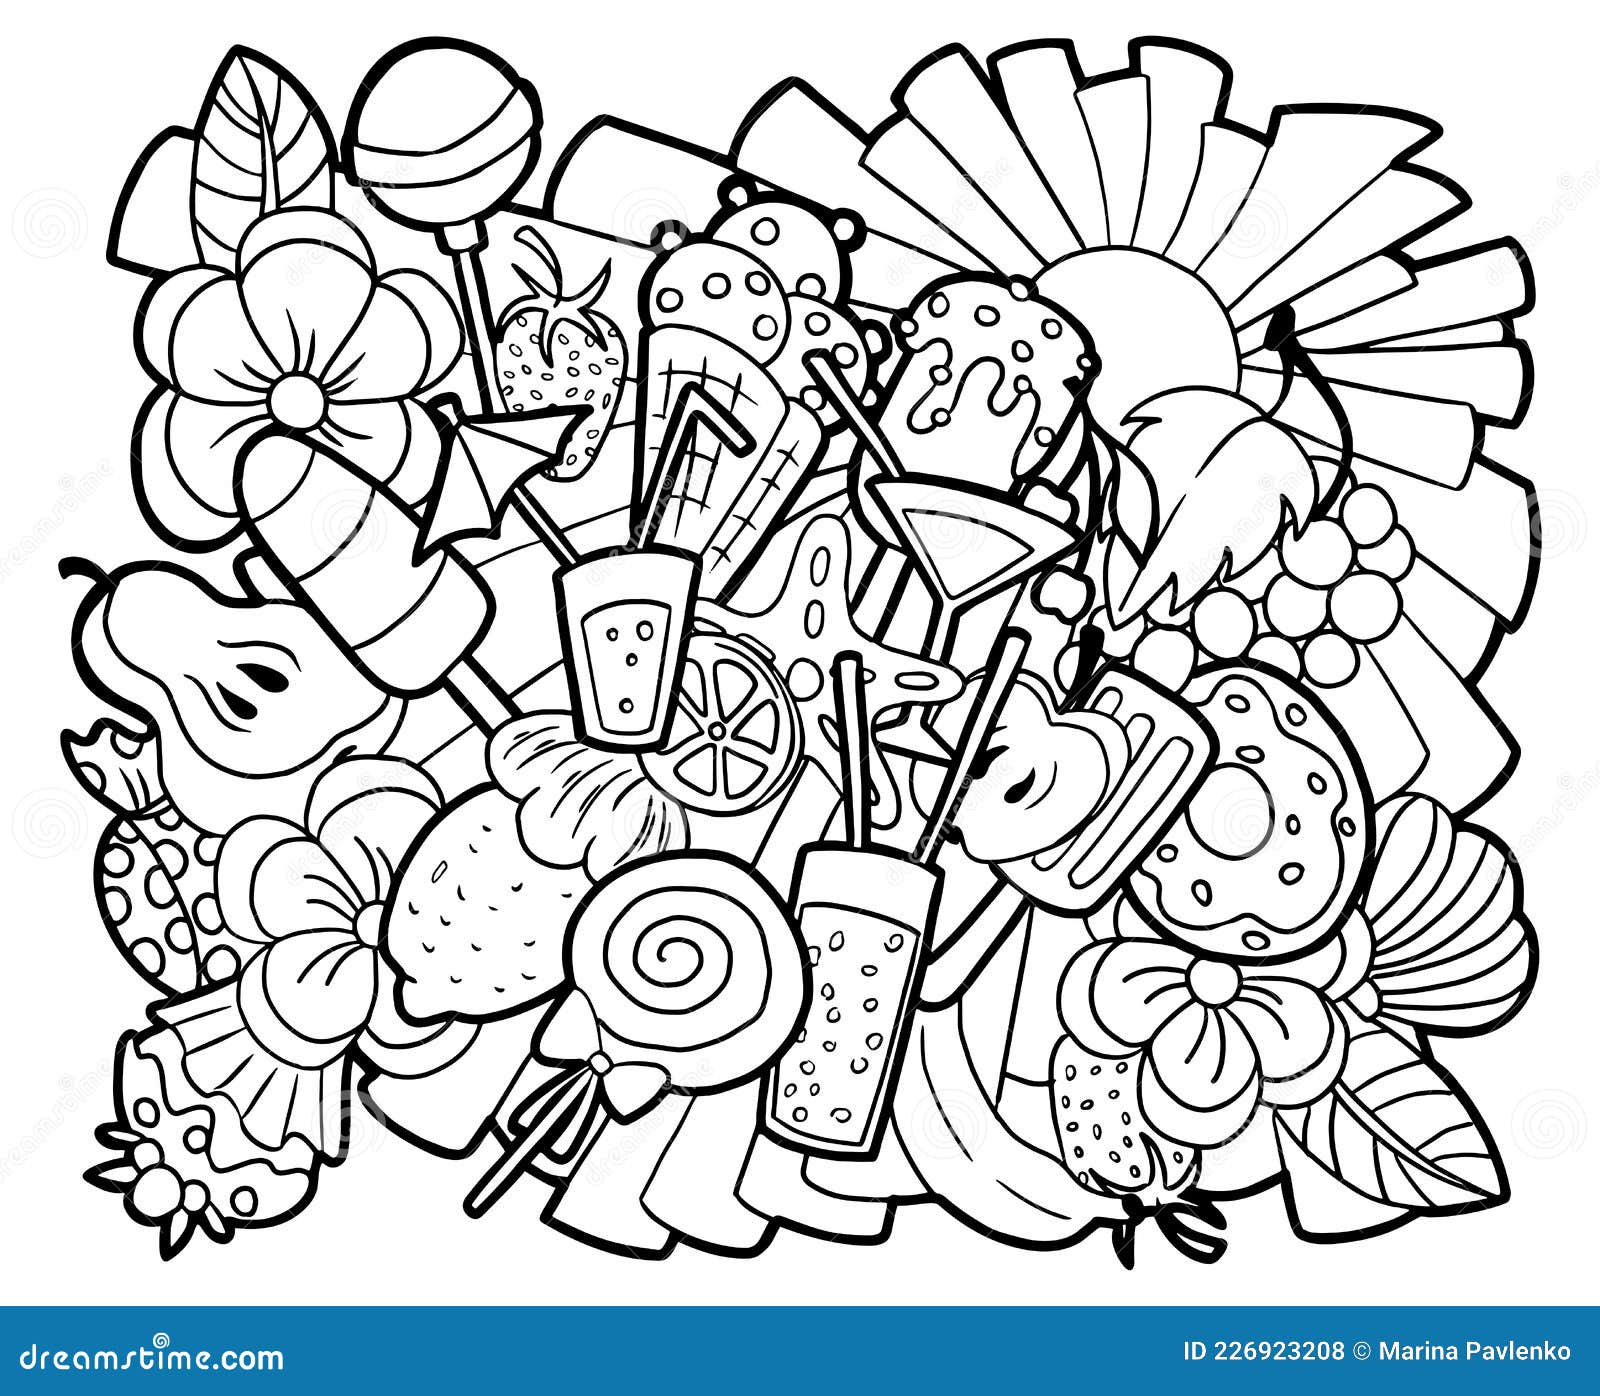 Sorvete Kawaii de Cone Página para colorir  Desenhos kawaii, Páginas para  colorir natal, Páginas para colorir gratuitas